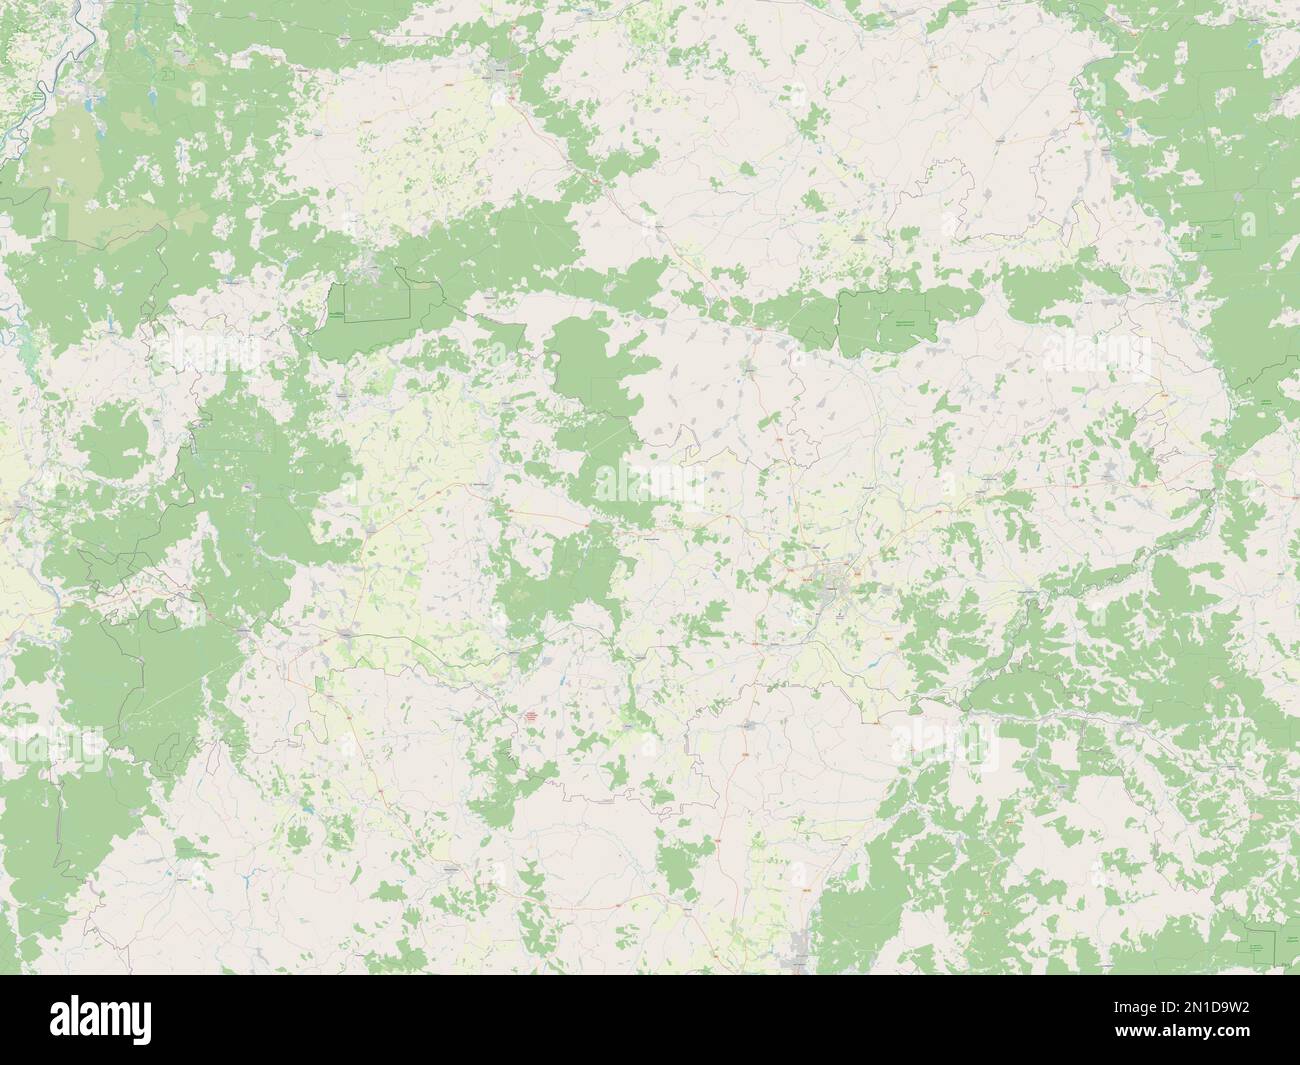 Mordovia, republic of Russia. Open Street Map Stock Photo